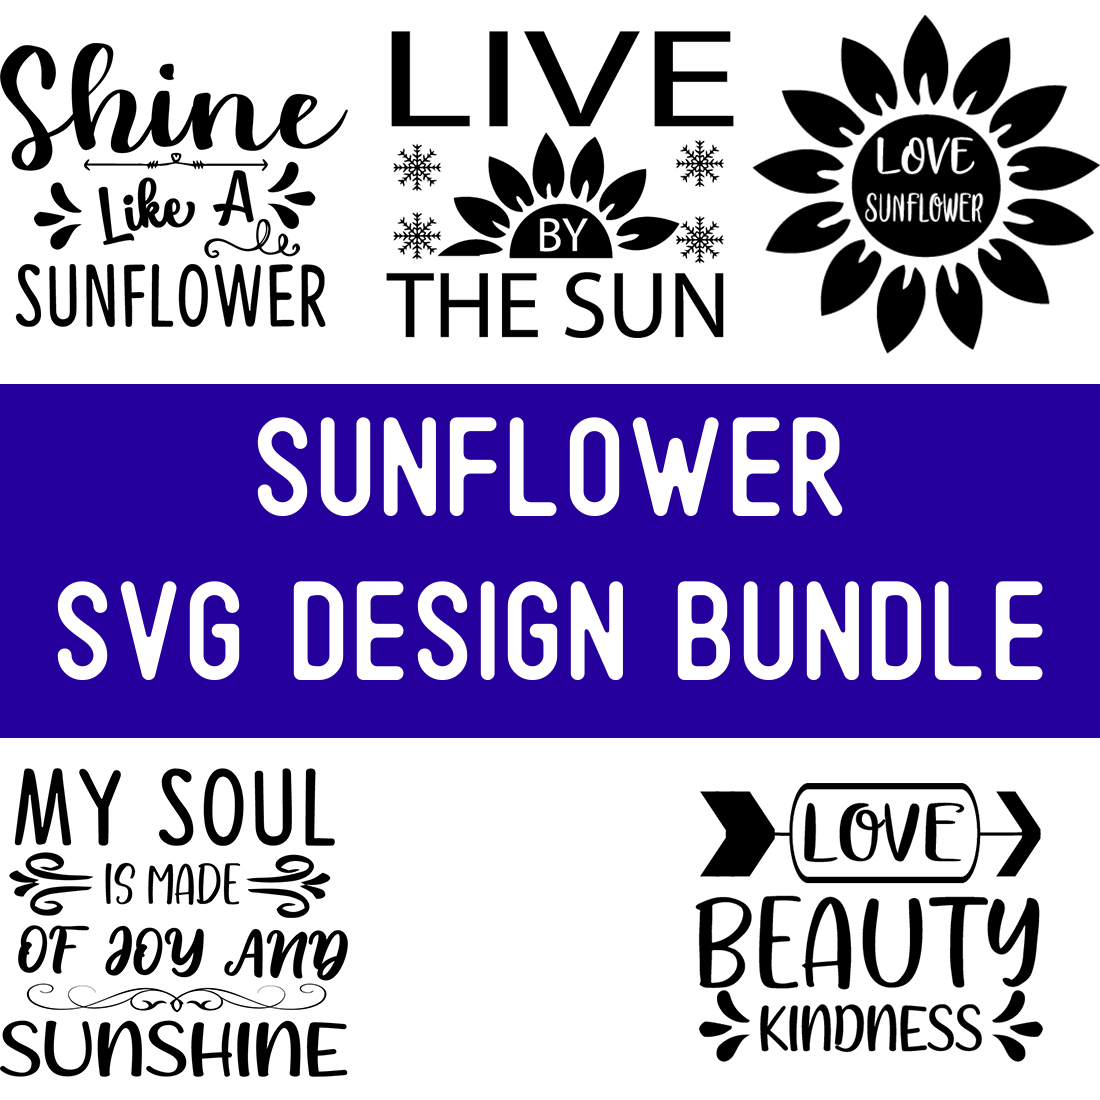 sunflower SVG Design Bundle preview image.